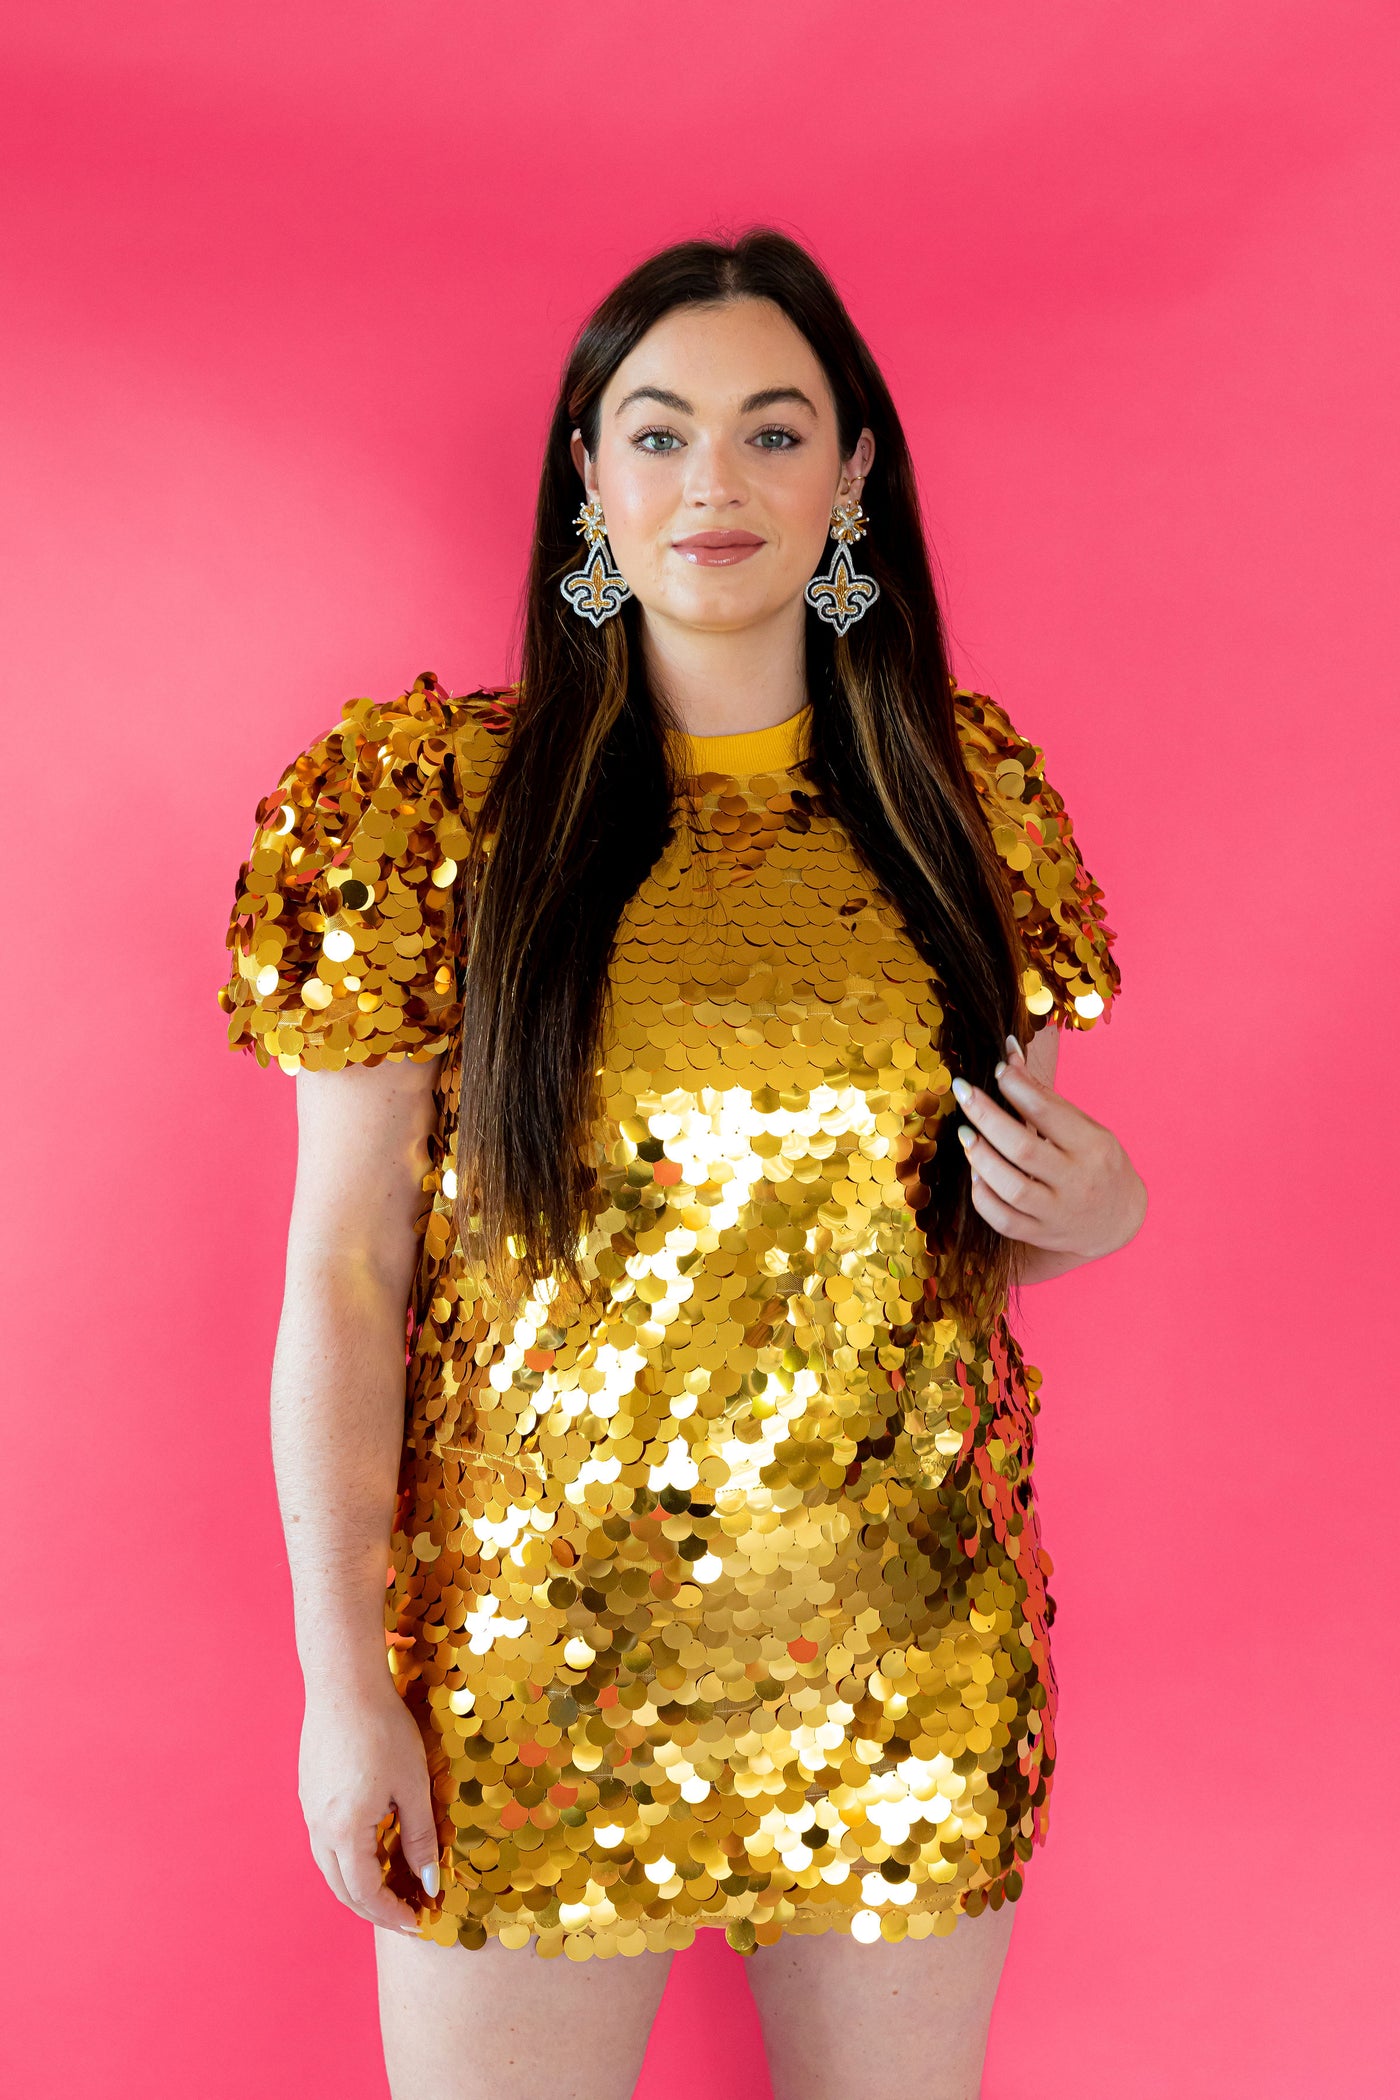 Queen of Sparkles - Gold Sequin Top